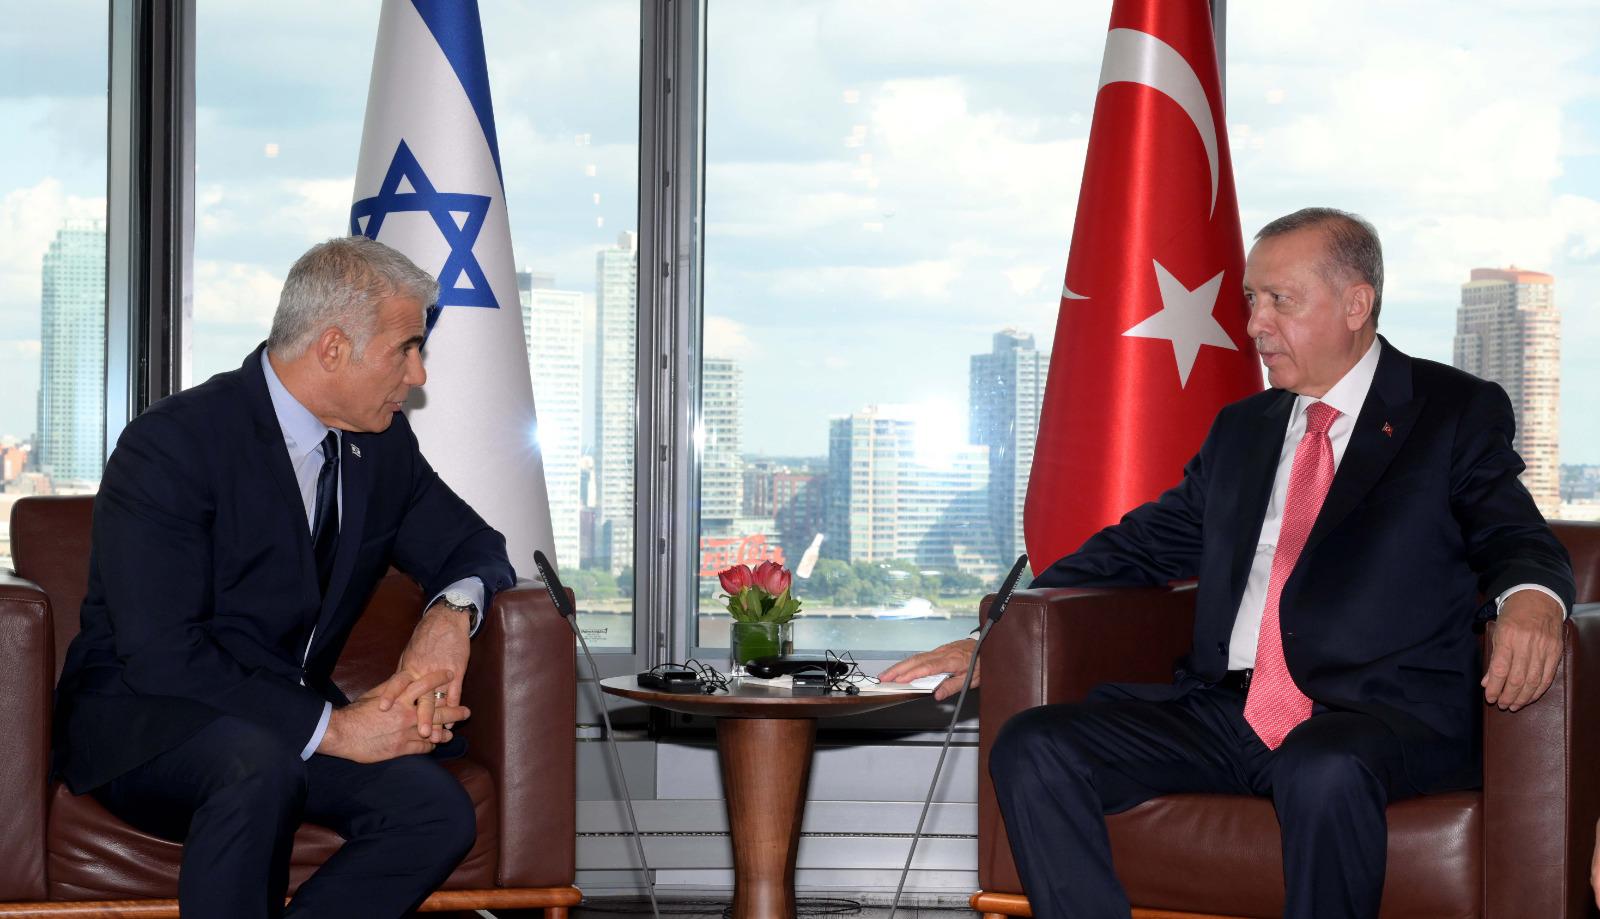 इजरायलका प्रधानमन्त्री र टर्कीका राष्ट्रपतिबीच दुर्लभ भेटवार्ता